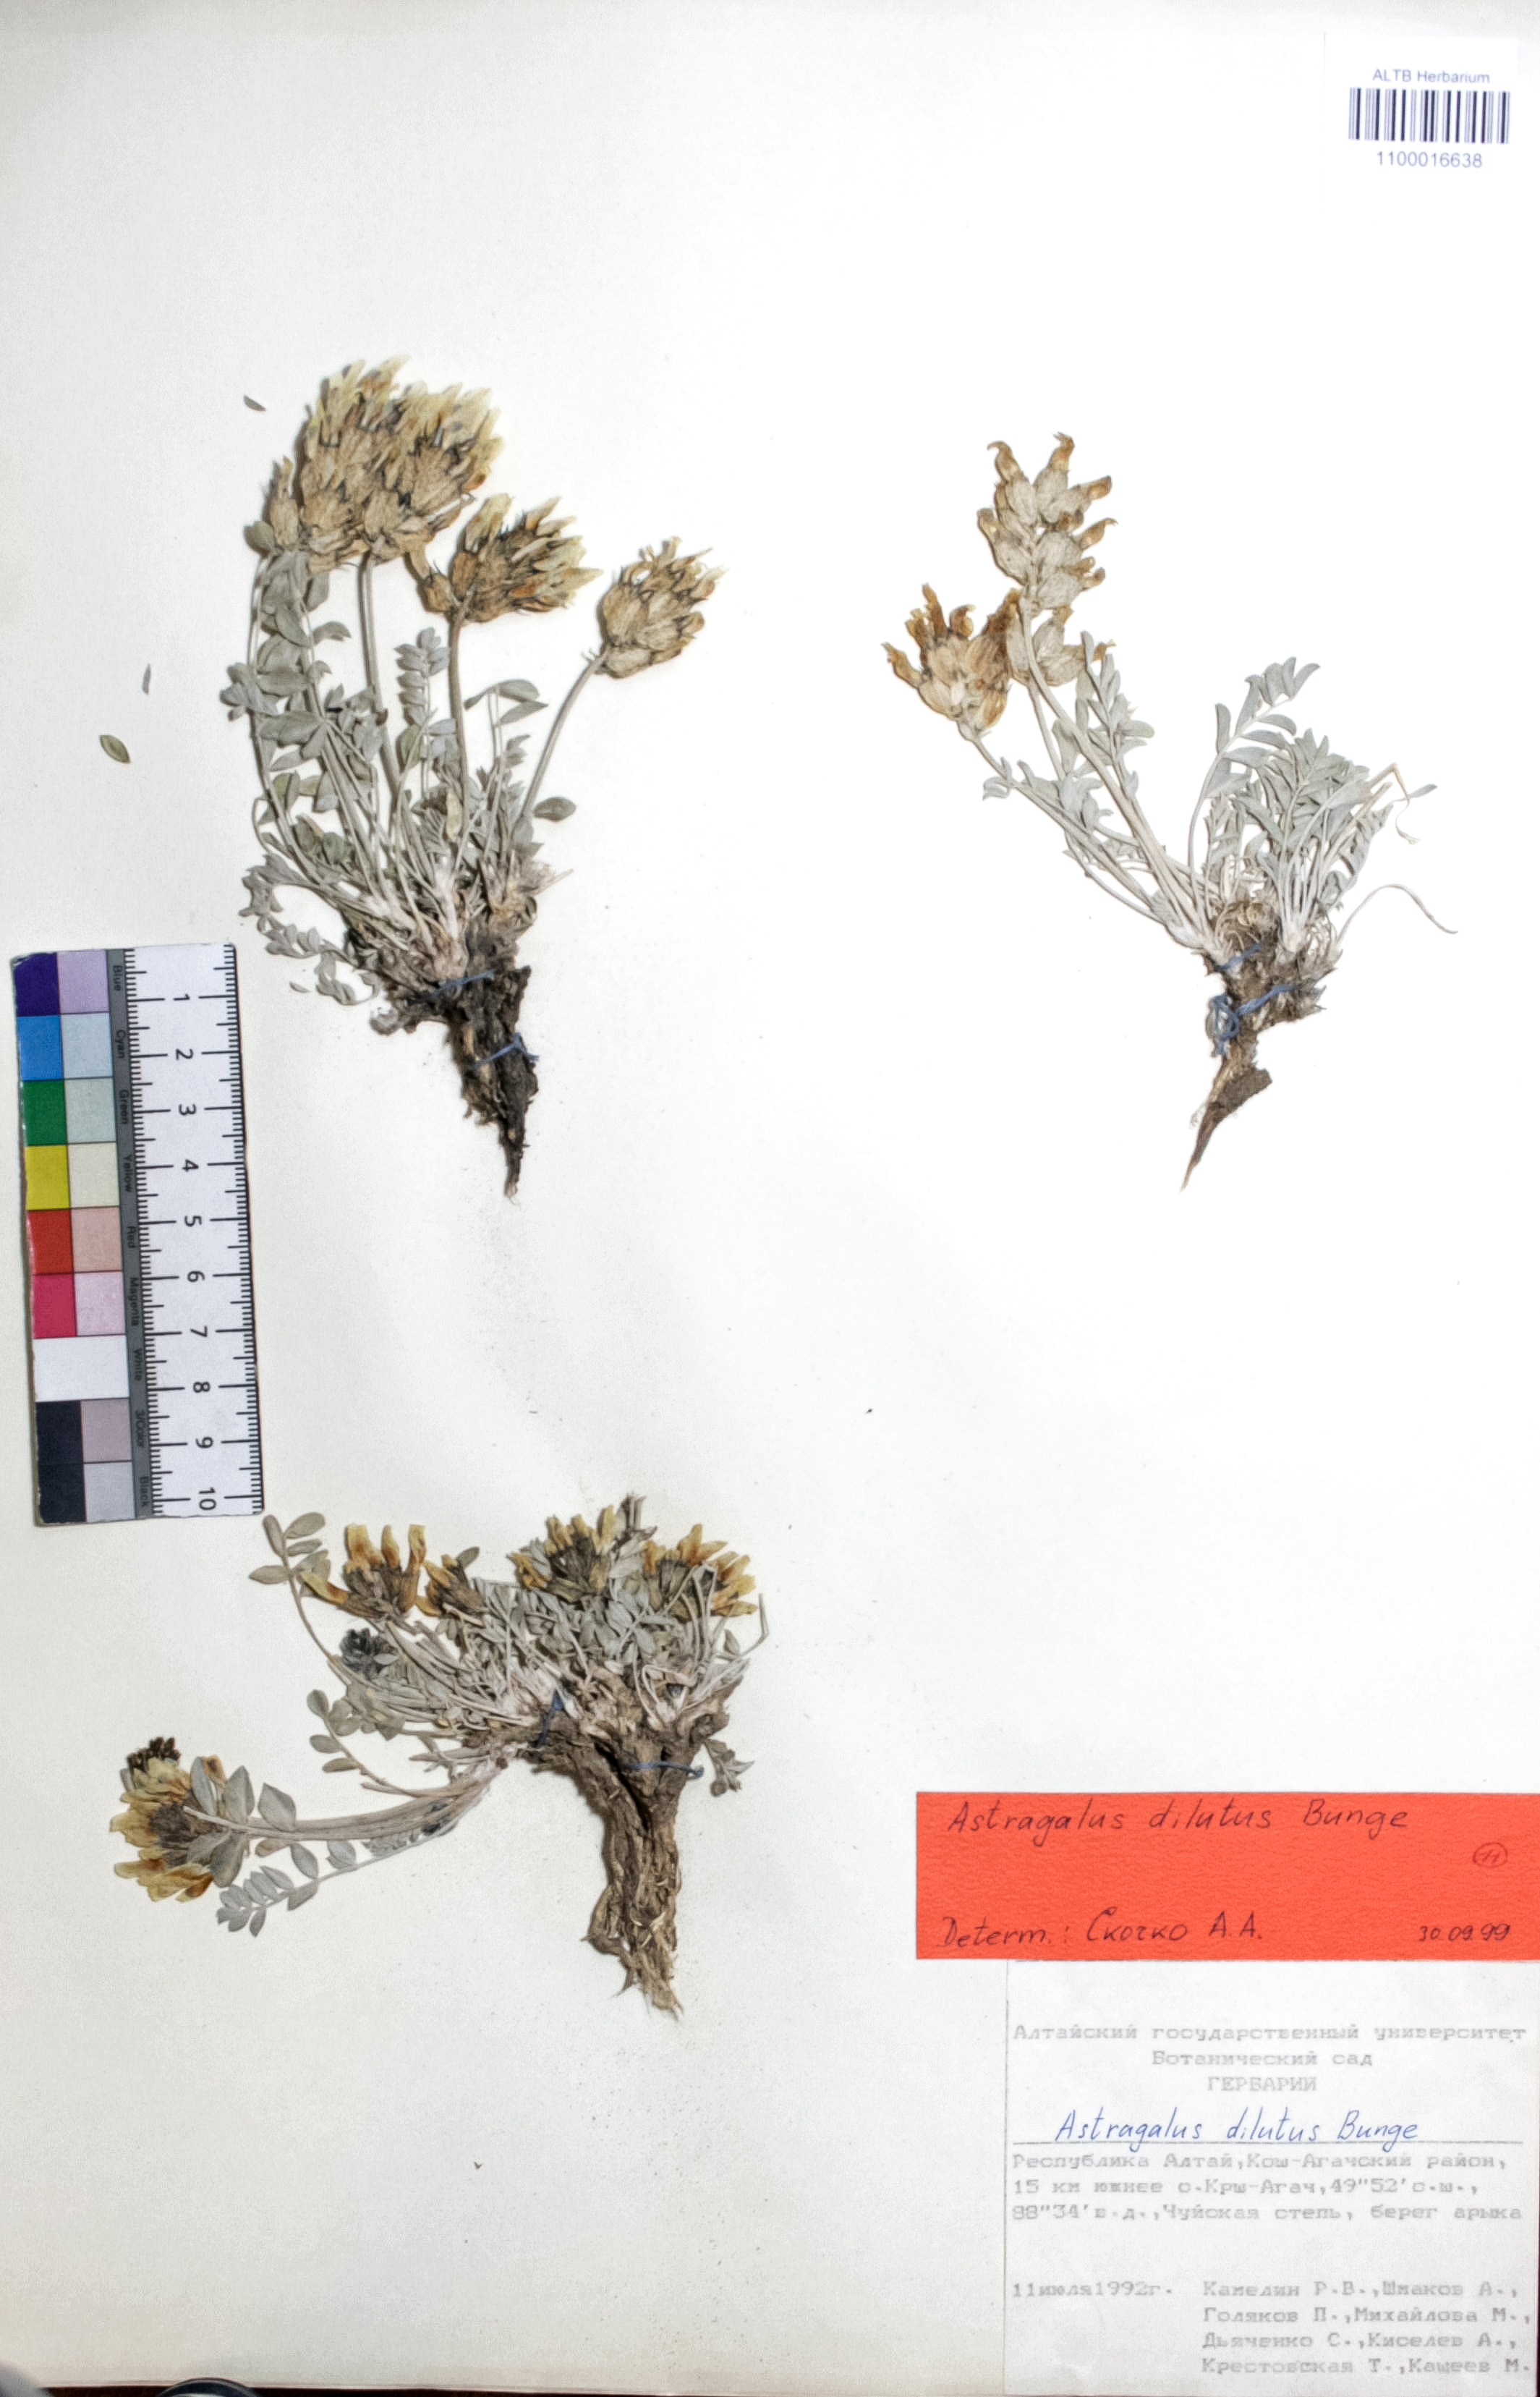 Astragalus dilutus Bunge